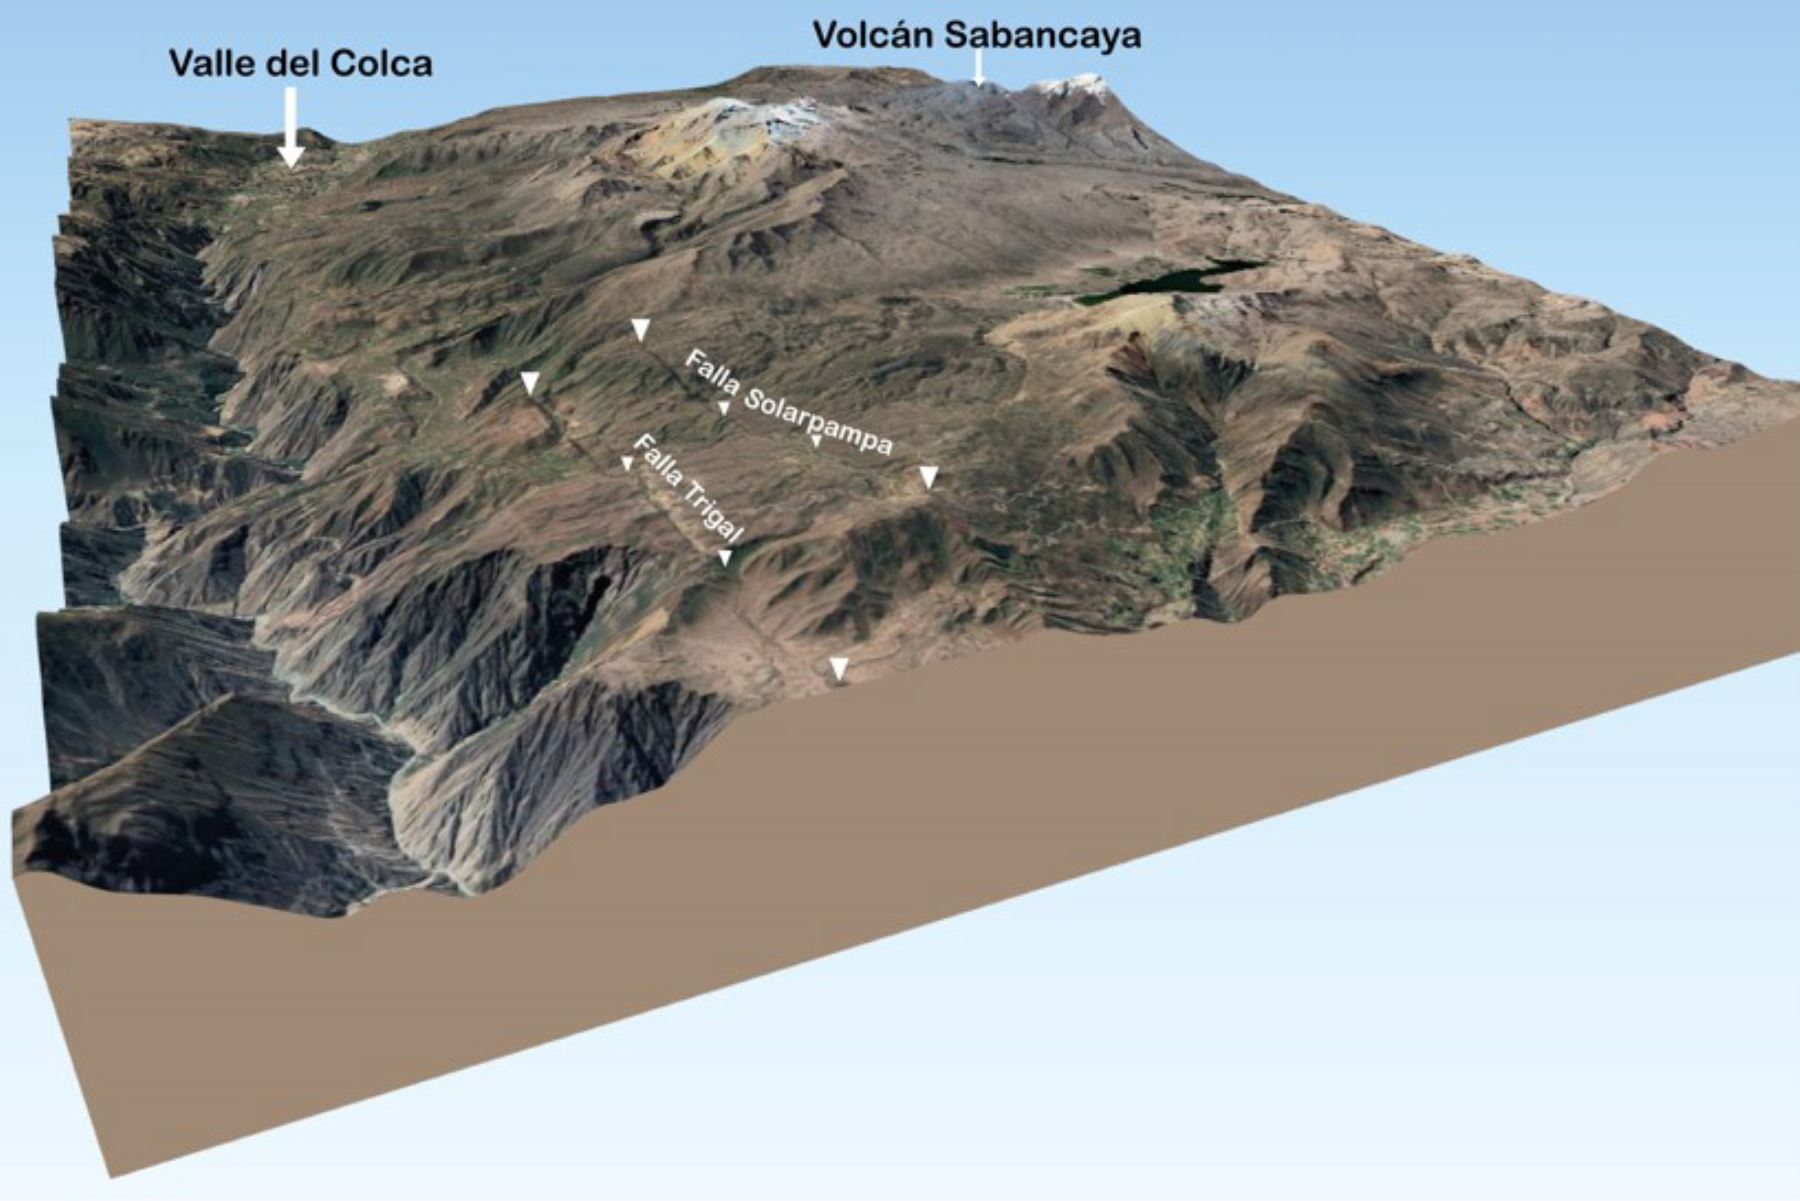 Trigal y Solarpampa son las fallas geológicas activas identificadas por especialistas del Ingemmet en las inmediaciones del volcán Sabancaya y el valle del Colca.